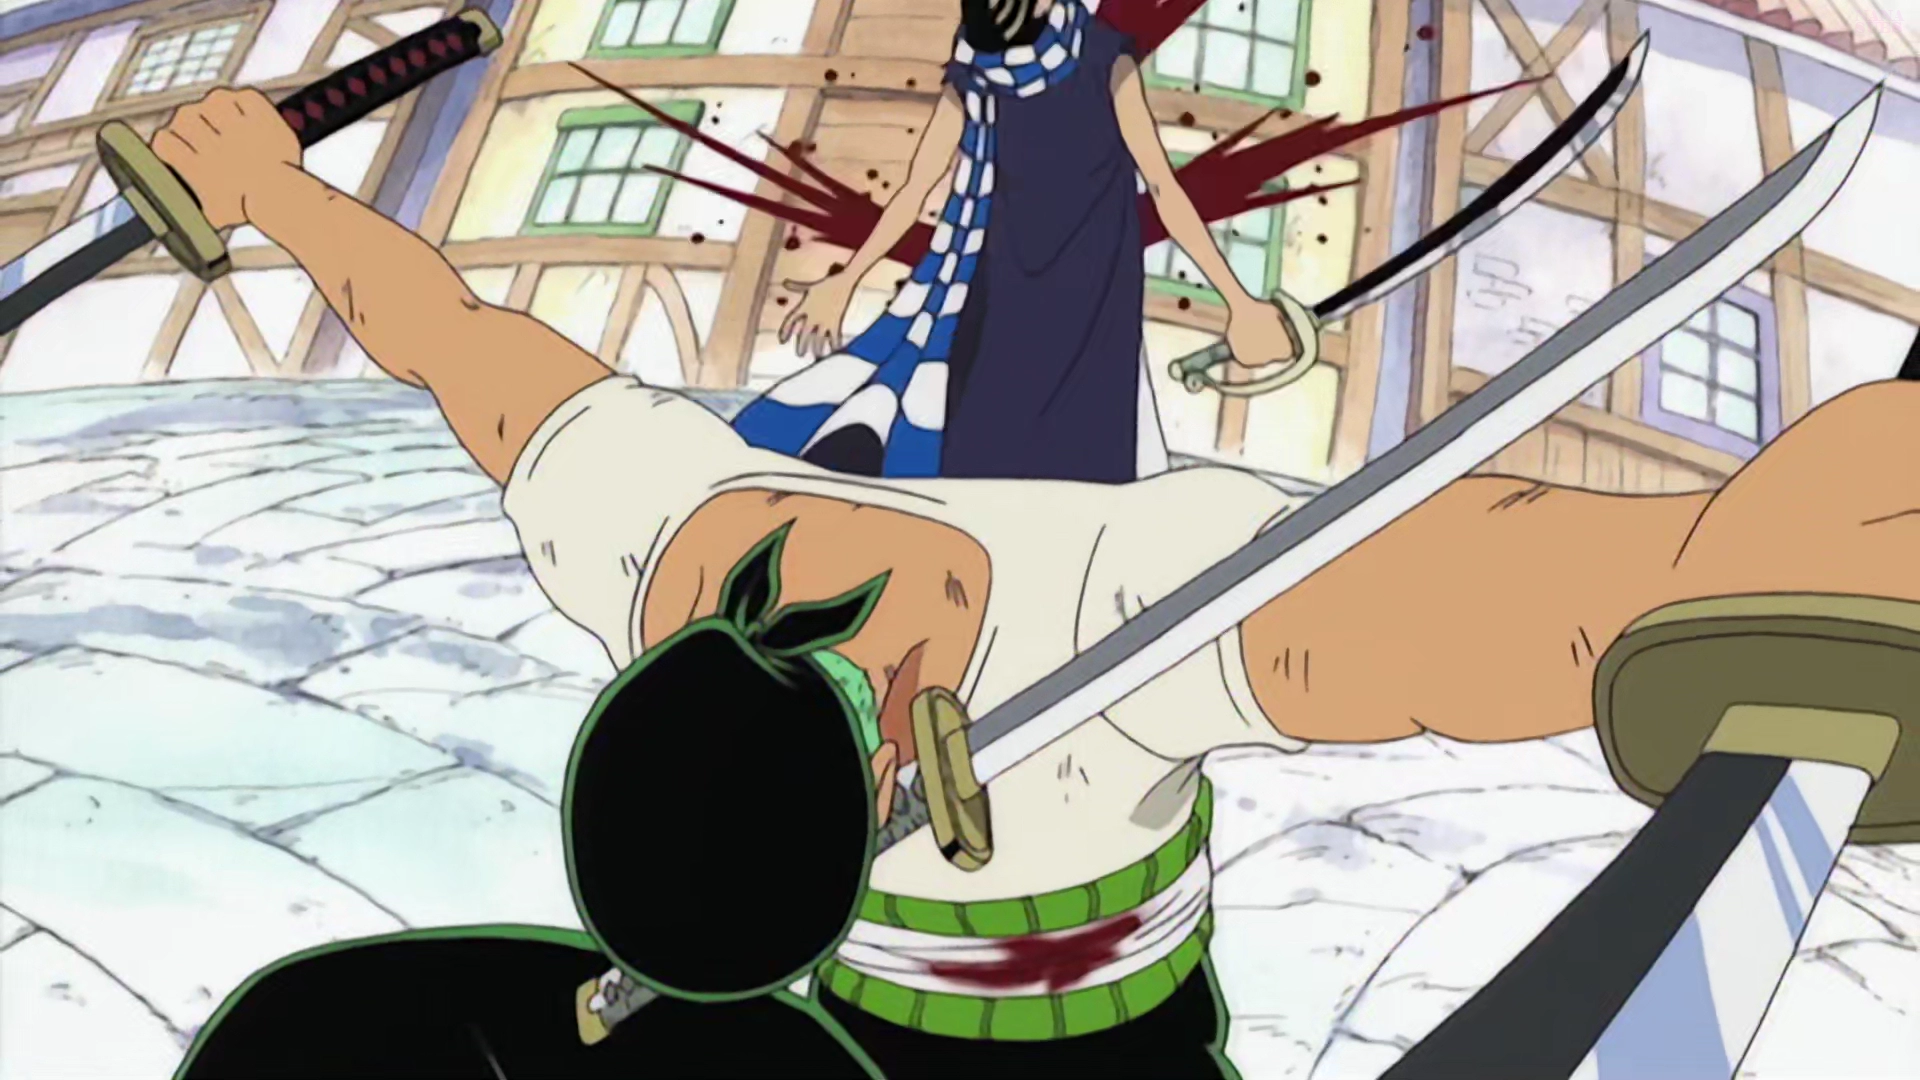 Minaturka 7 odcinka One Piece